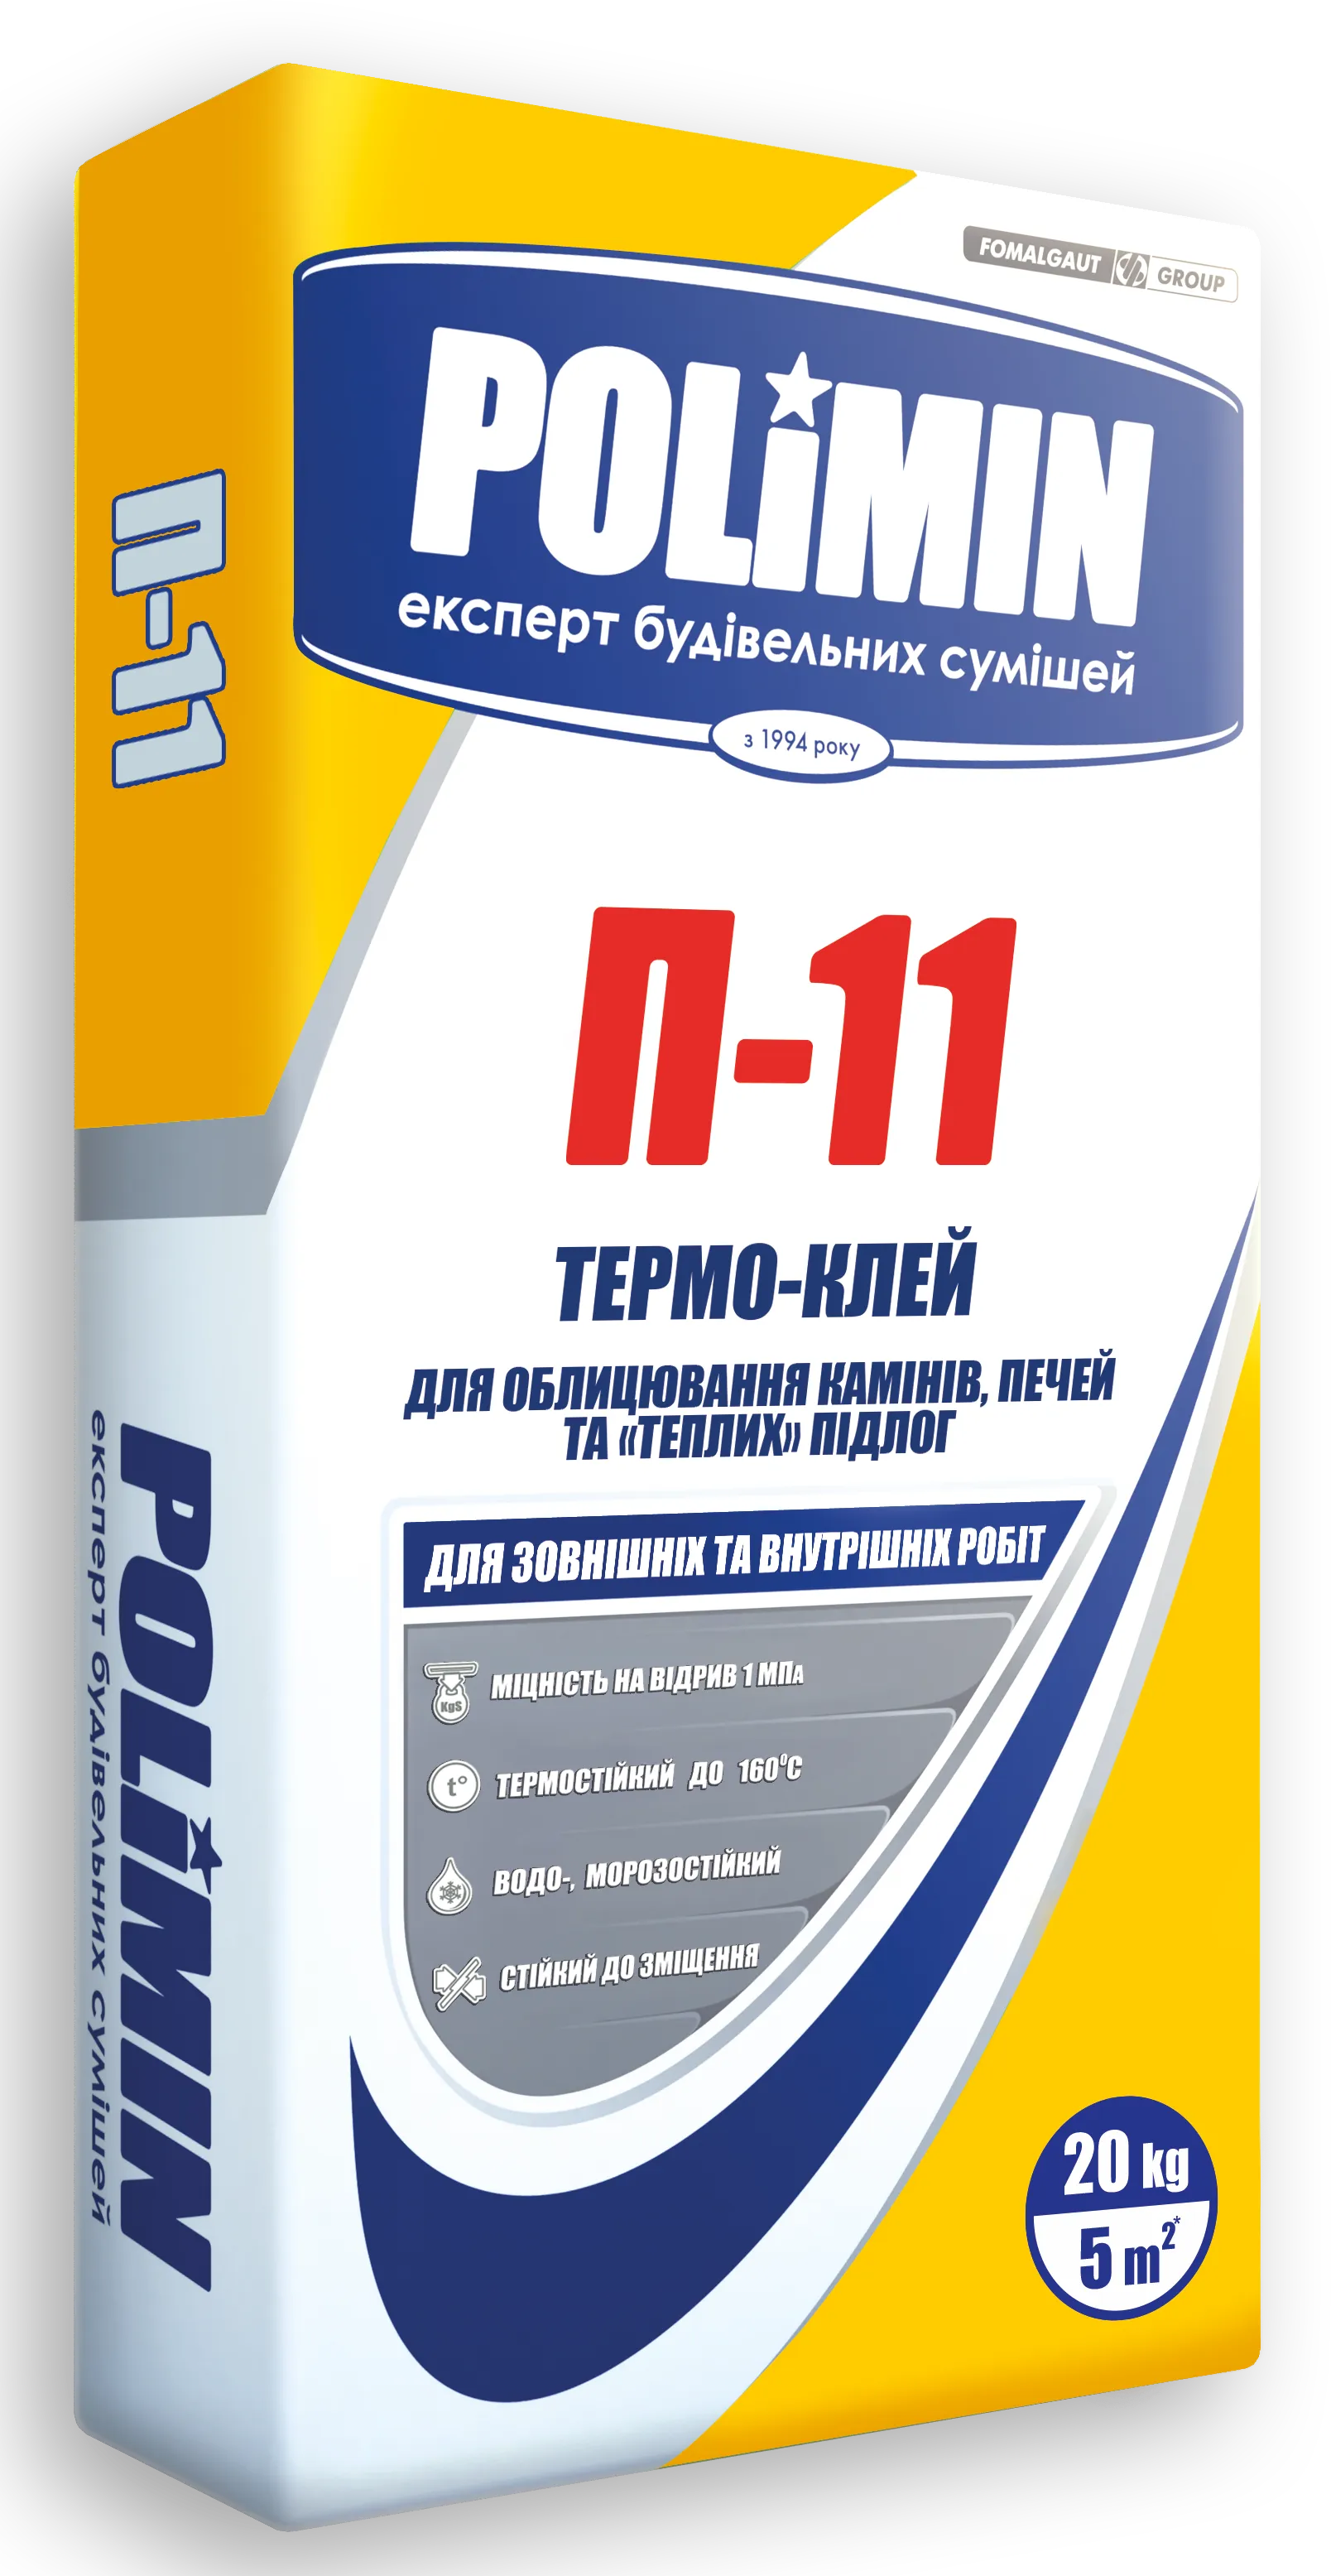 Клей для плитки термостійкий Polimin П-11